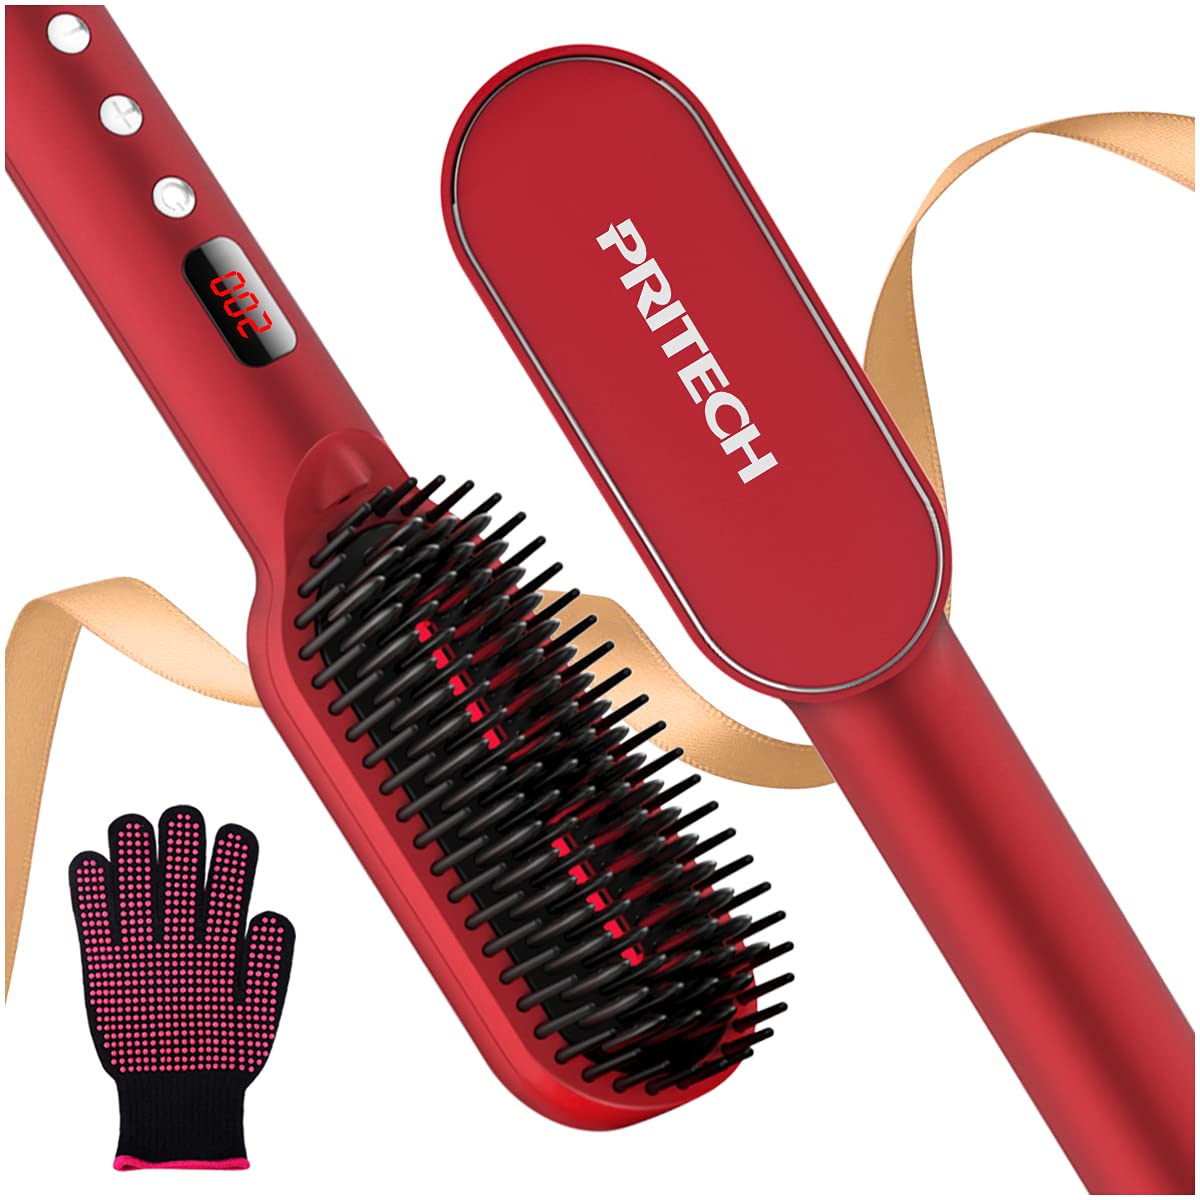 Hair Straightening Brush - TA-2353